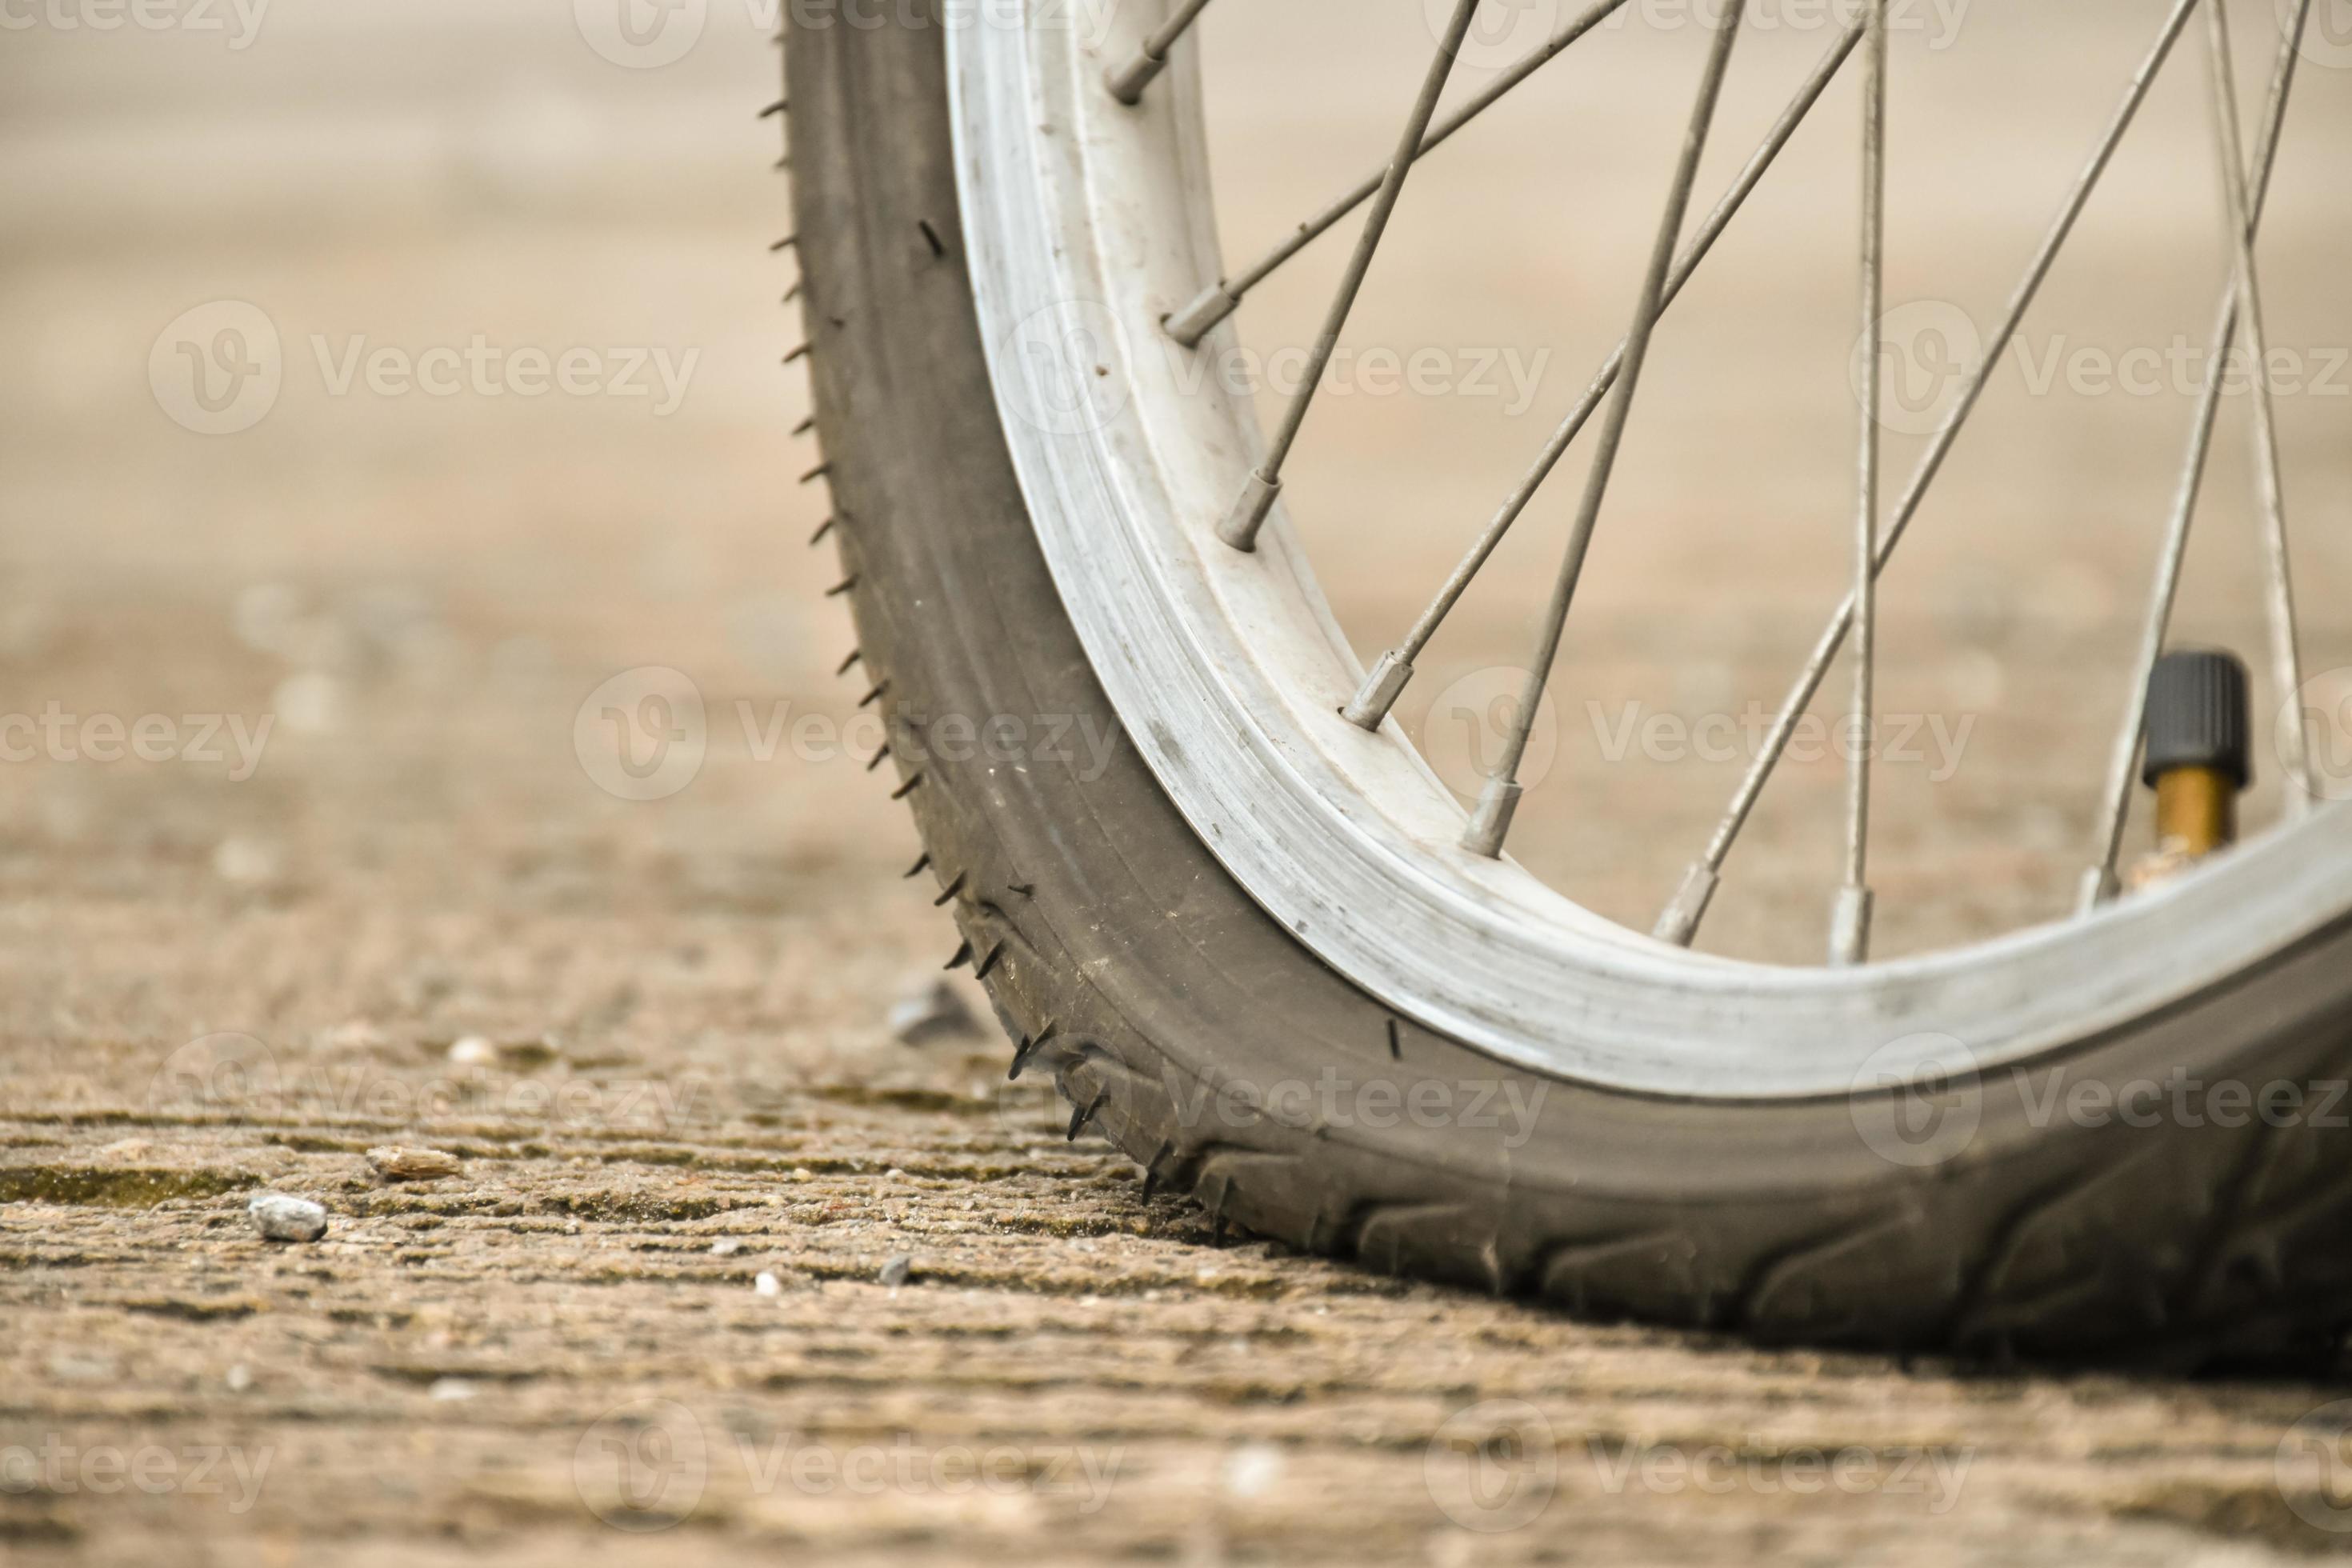 visão aproximada da roda furada da bicicleta ou do pneu furado da bicicleta  que estacionou na estrada e esperando para consertar. 18952047 Foto de  stock no Vecteezy